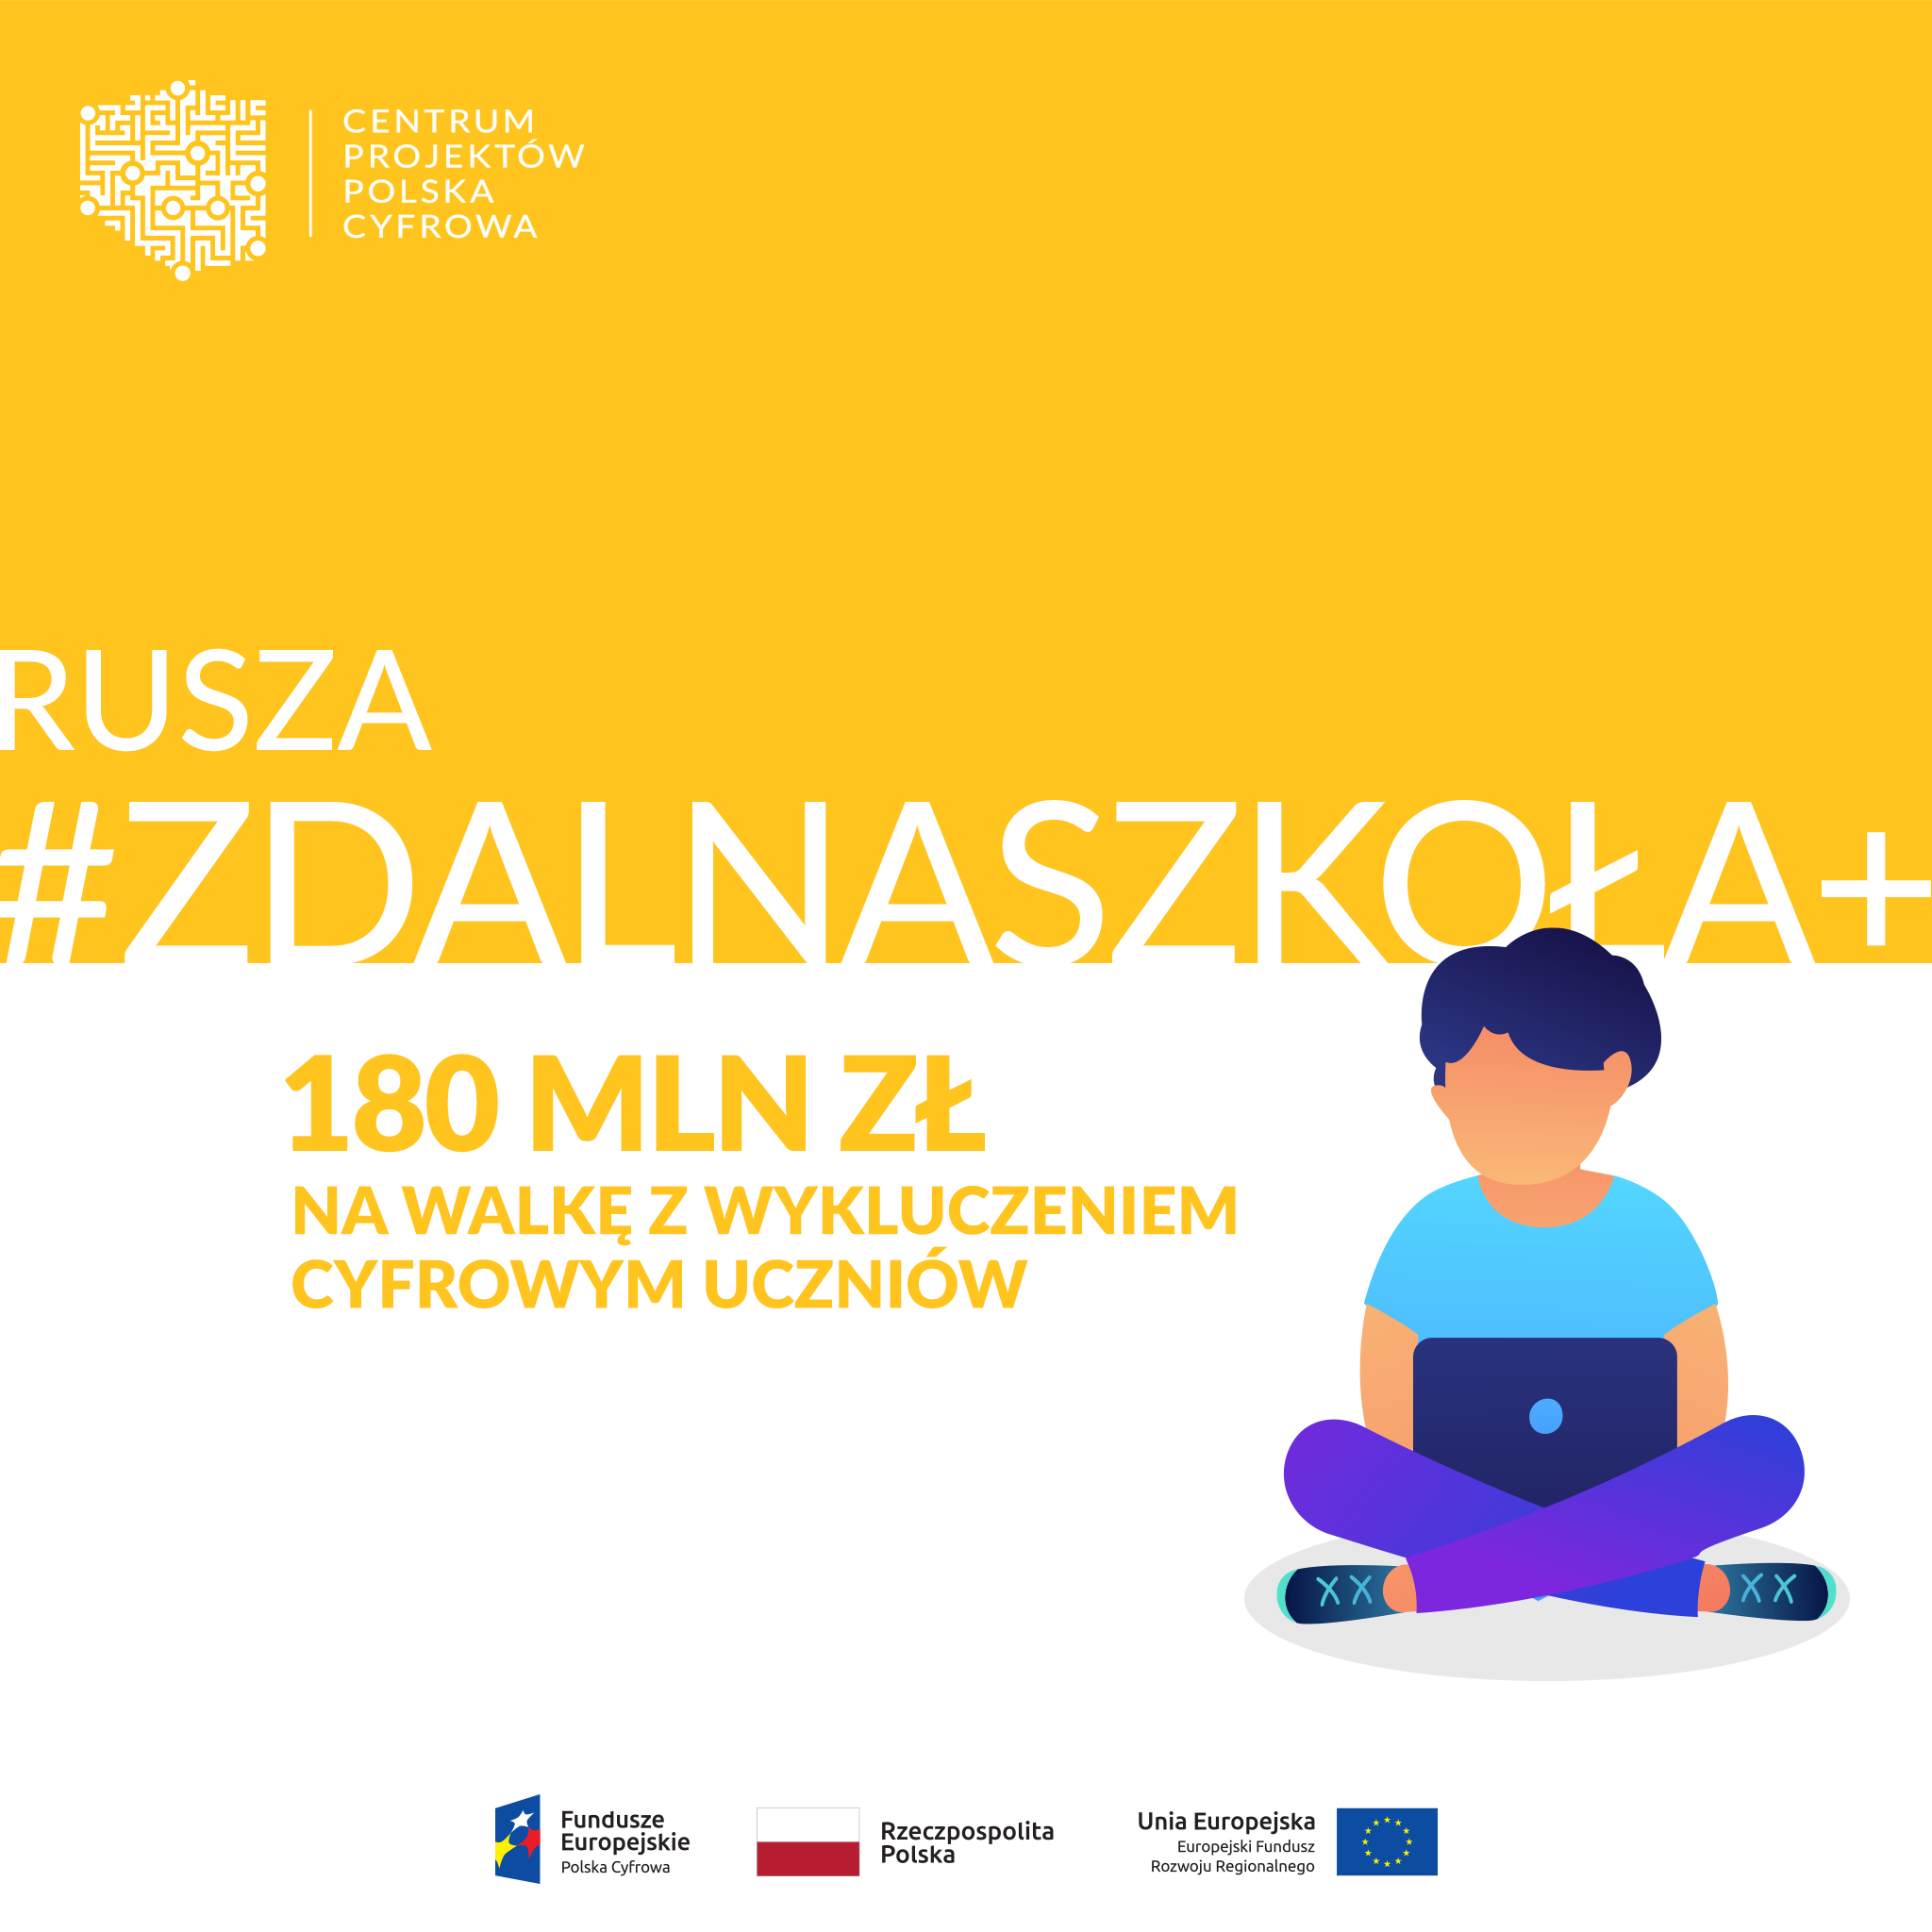 Projekt „Zdalna Szkoła +” to 180 milionów złotych, które przeznaczamy na pomoc wielodzietnym rodzinom. Pieniądze posłużą zakupowi sprzętu komputerowego w ramach walki z wykluczeniem cyfrowym uczniów.